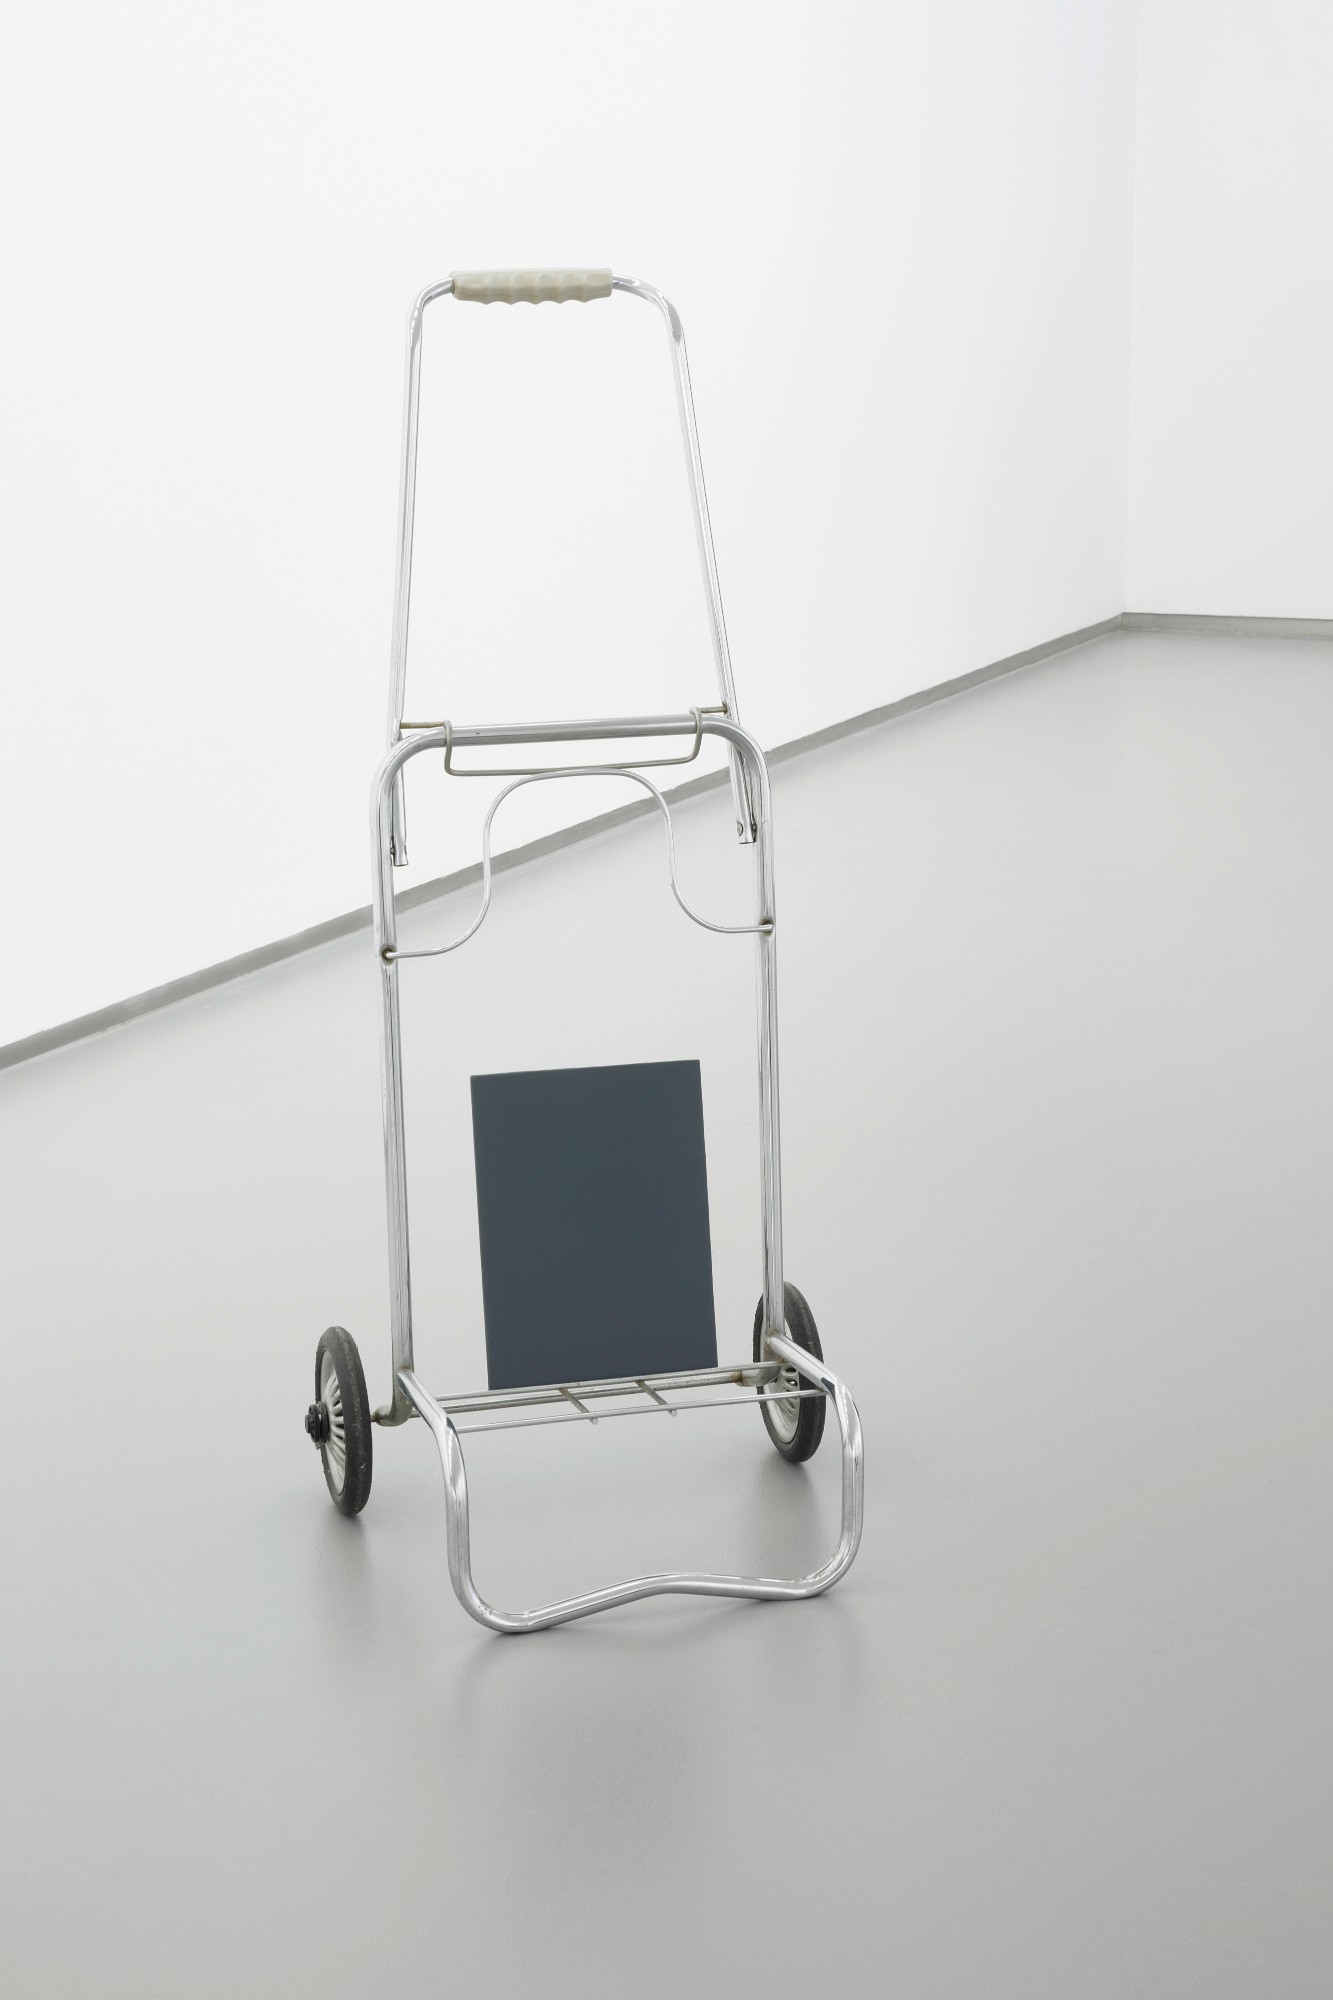 Anna Kolodziejska, Ohne Titel (grauer Vogel), 2014, shopping trolley, acrylic on cardboard, 95 x 45 x 35 cm